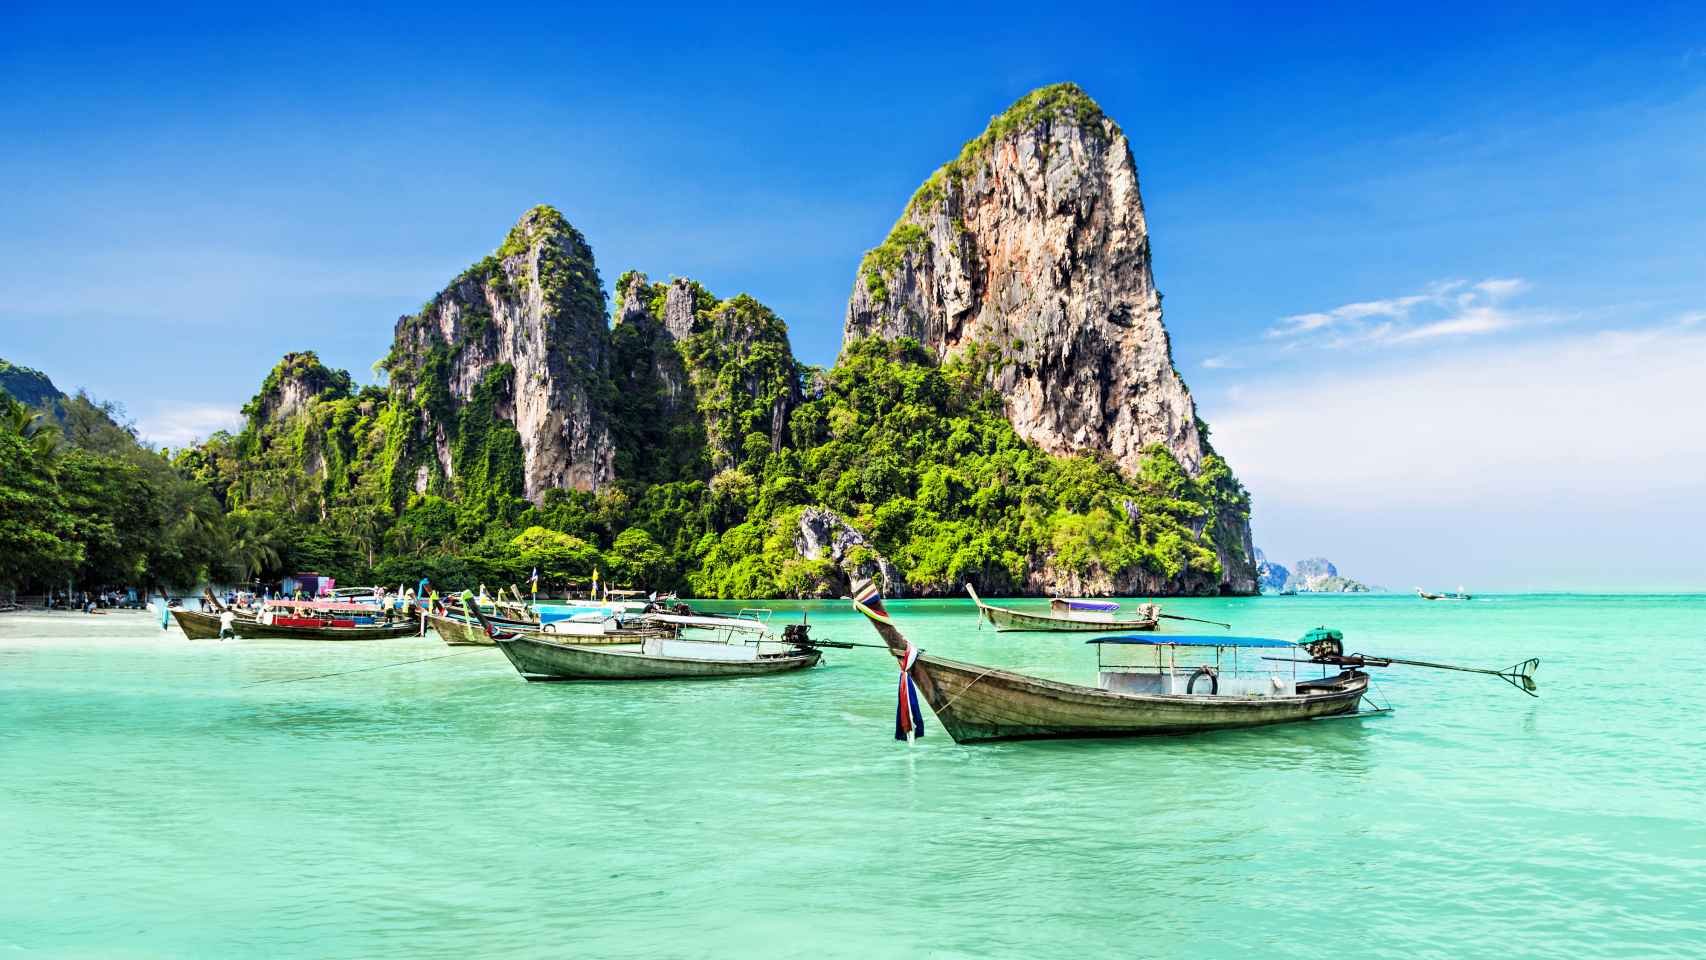 Las playas de la isla de Phuket ofrecen imágenes paradisíacas.